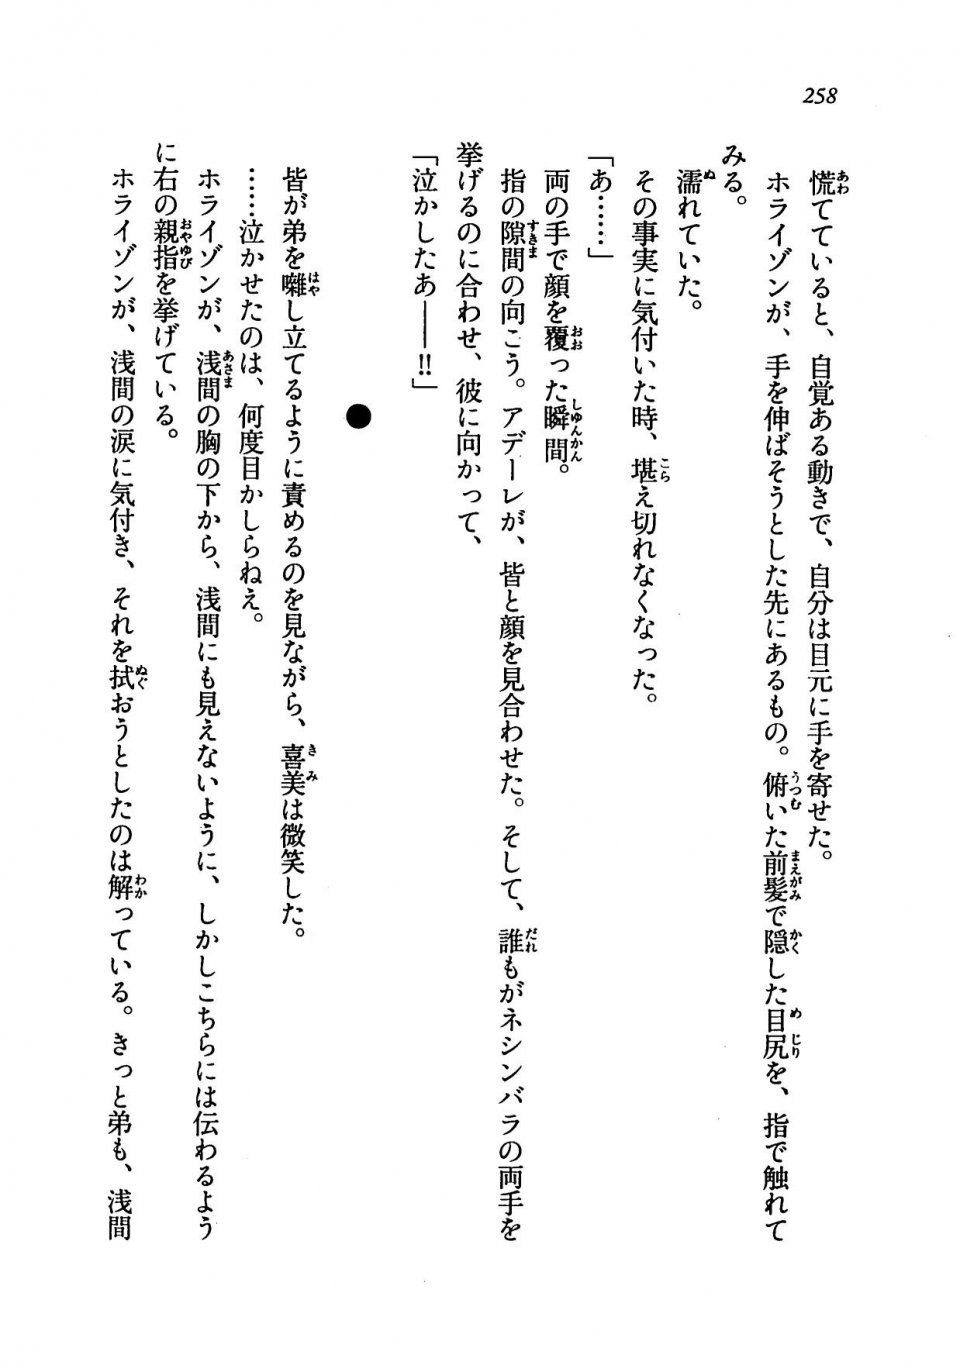 Kyoukai Senjou no Horizon LN Vol 19(8A) - Photo #258